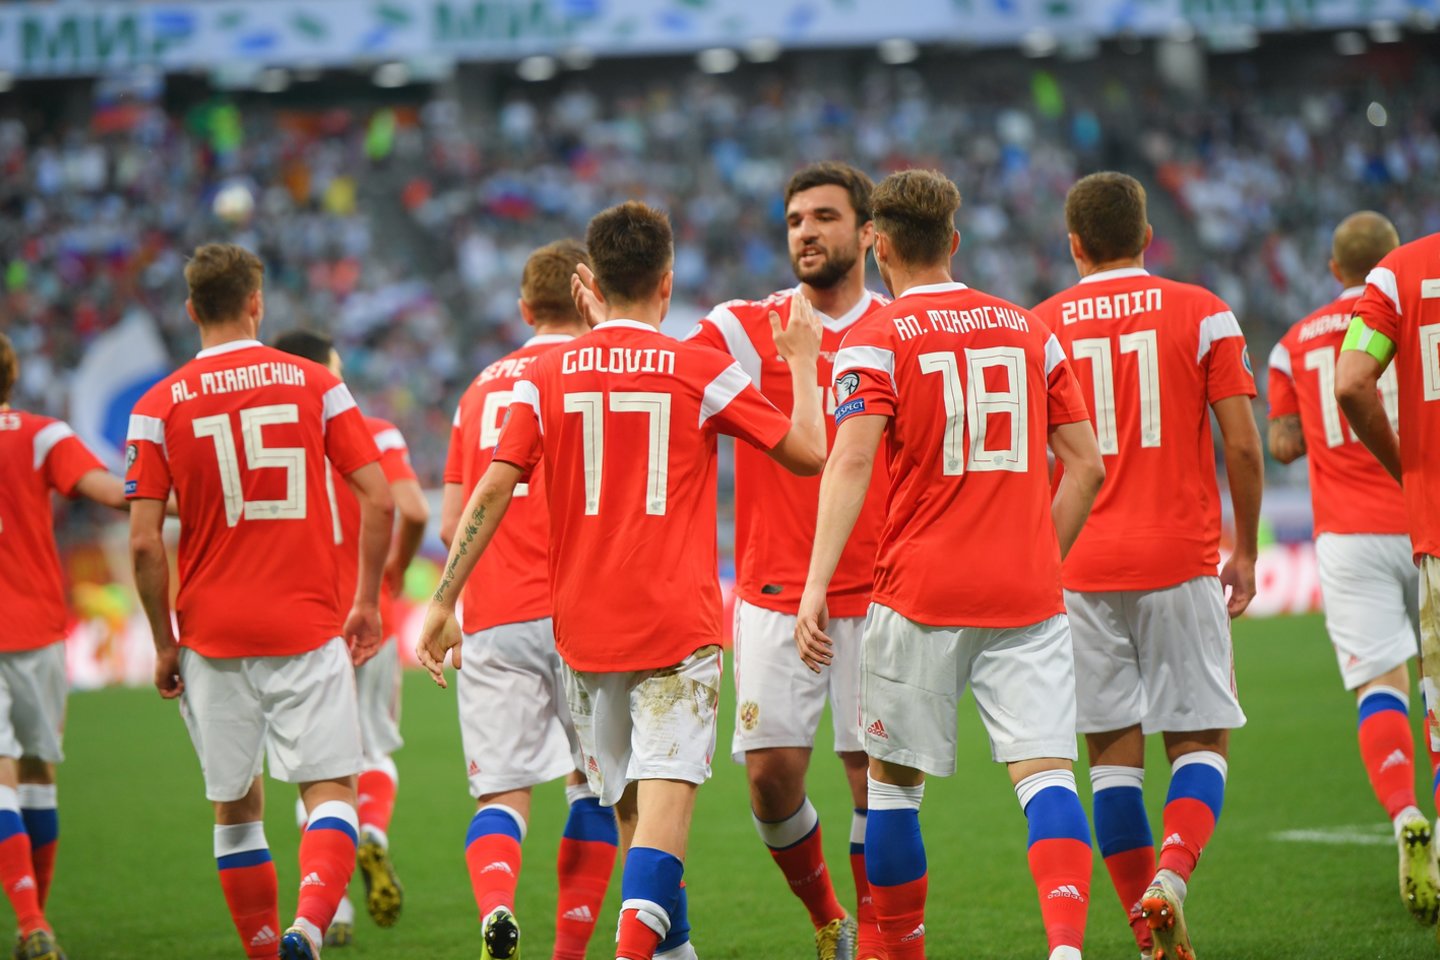 Rusijos futbolo sąjunga pranešė, kad neteko rinktinės aprangos už 3,5 mln. rublių<br>Scanpix.com nuotr.